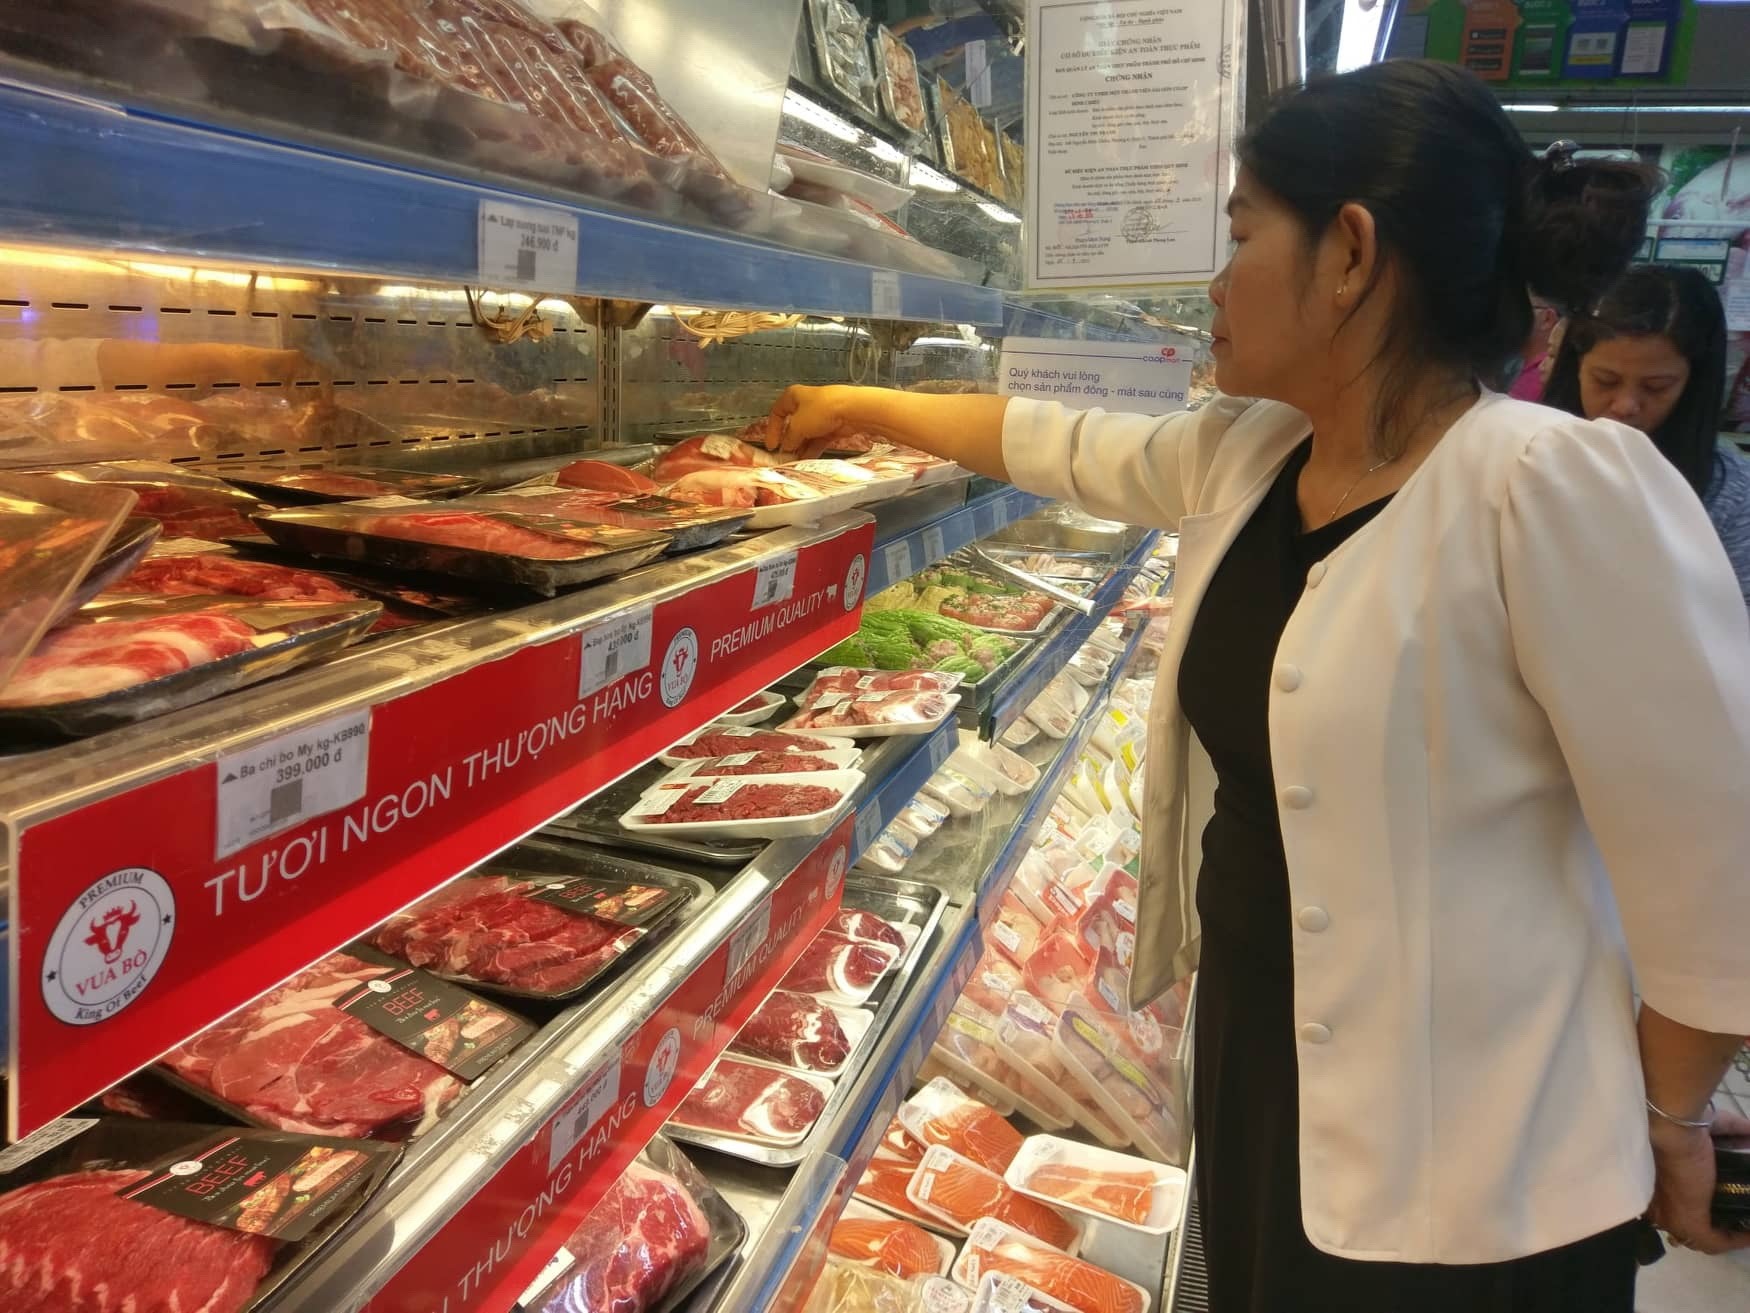 Đại diện Công ty cổ phần Việt Nam Kỹ nghệ súc sản (Vissan) nhấn mạnh, hiện mặt hàng thịt heo cung ứng ra thị trường không có dấu hiệu sụt giảm. Đối với sản phẩm thực phẩm chế biến, các doanh nghiệp đều khẳng định sản lượng đảm bảo đủ cung ứng đến hết quý 2/2020 và đảm bảo không tăng giá.  Hiện nguồn hàng thực phẩm chế biến tại Vissan chiếm 1/2 tỷ trọng sản xuất của công ty, nguyên liệu dự trữ cho sản xuất đủ dùng đến tháng 3.2021, do đó giá thành sản phẩm sẽ luôn được đảm bảo.